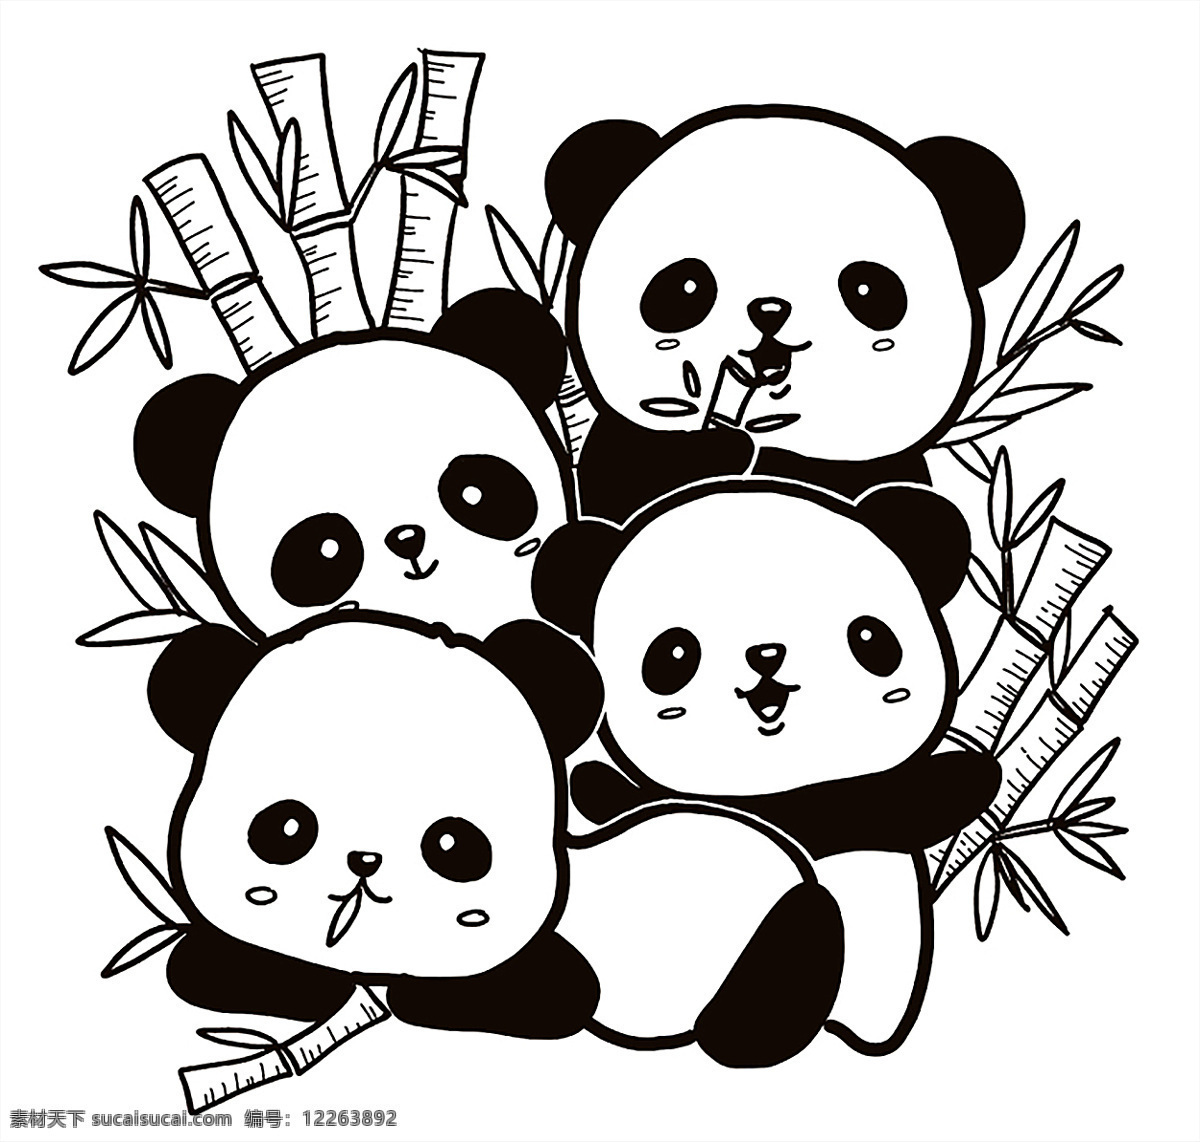 熊猫 简 笔画 少儿 涂色 简笔 竹子 动物 背景 生活百科 ps 动漫动画 风景漫画